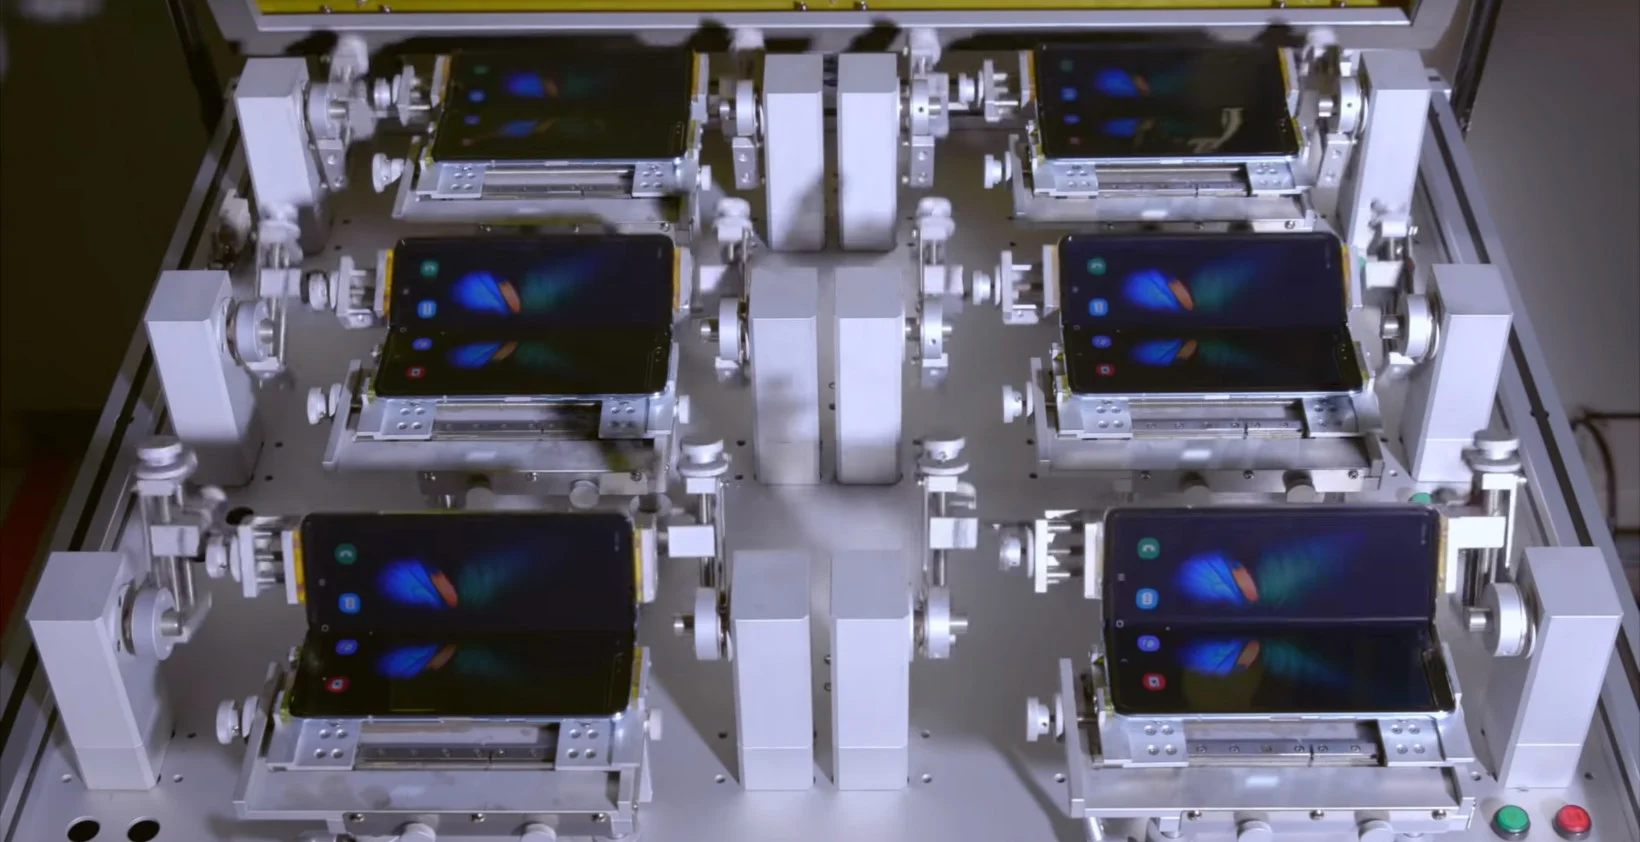 Залипательное видео: Samsung показала заводские тесты прочности складного смартфона Galaxy Fold - фото 1